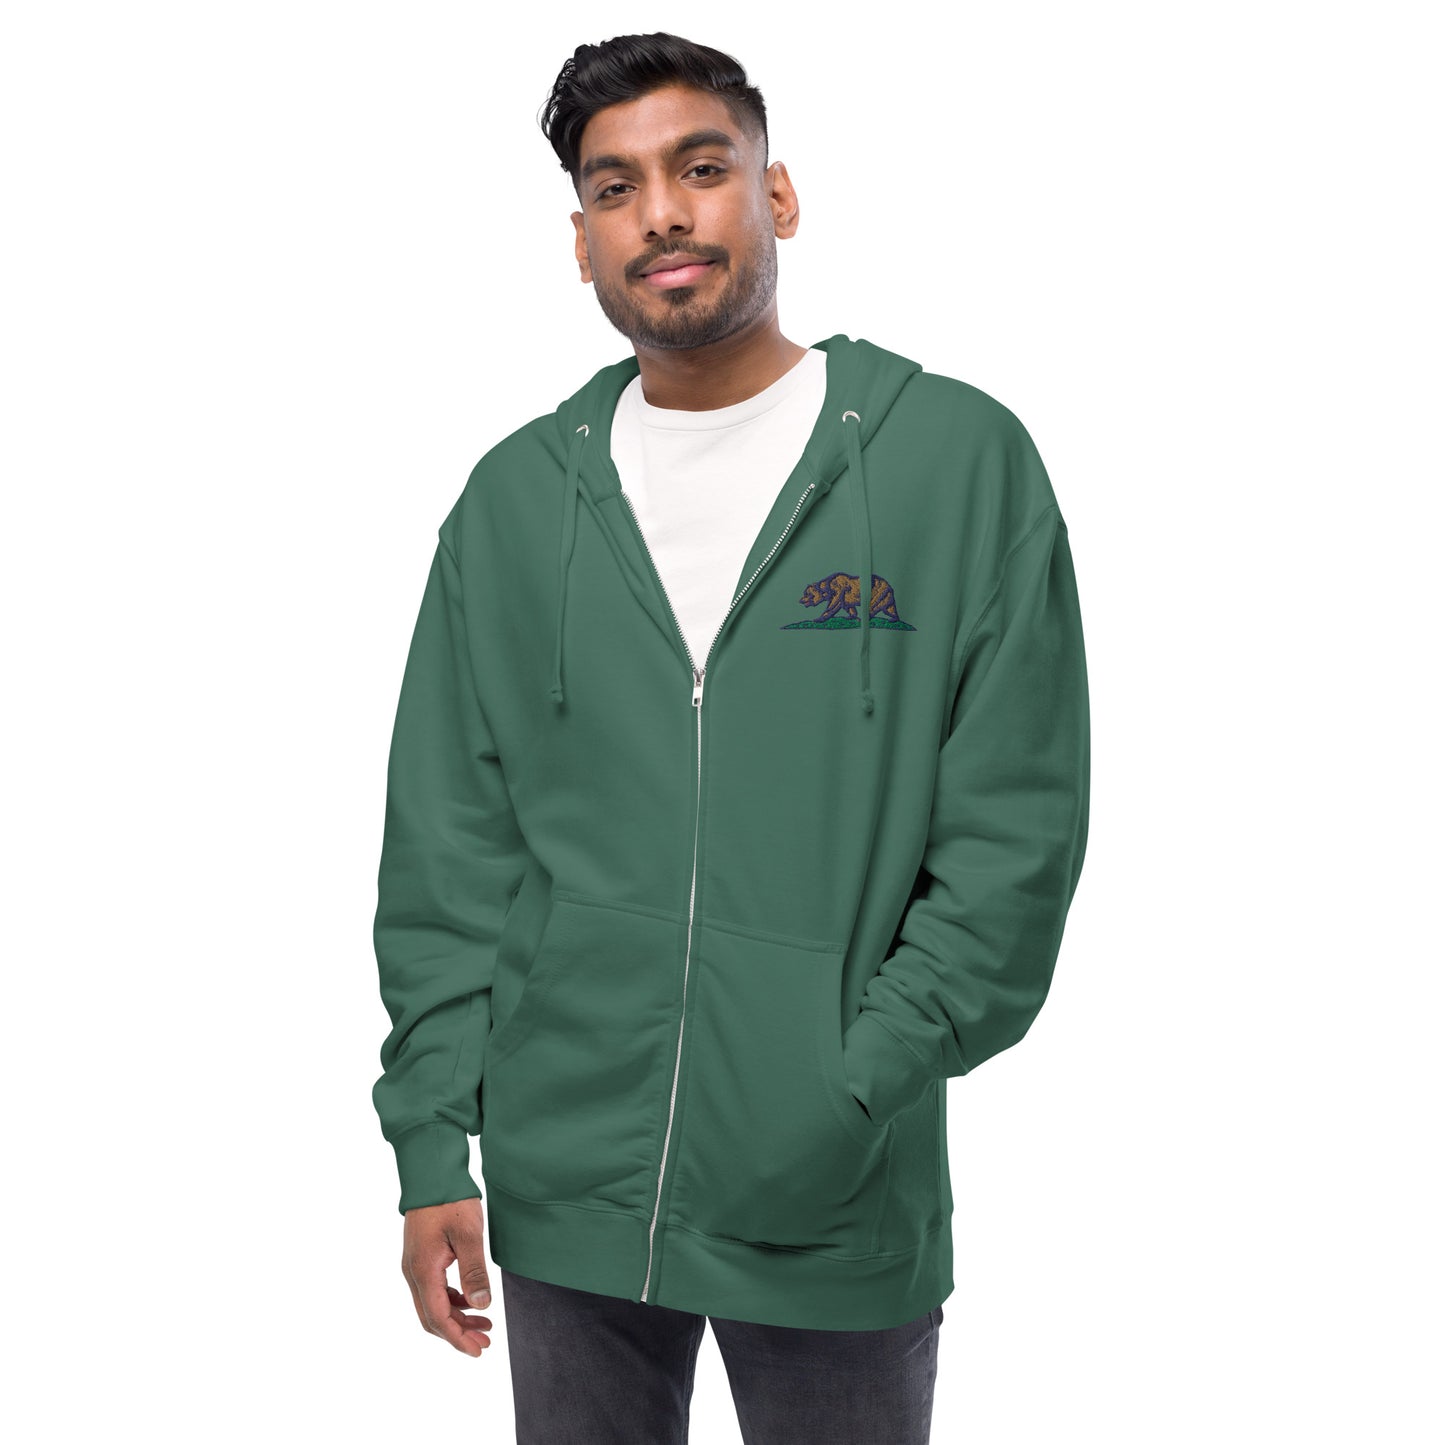 CA - Unisex fleece zip up hoodie - ITC